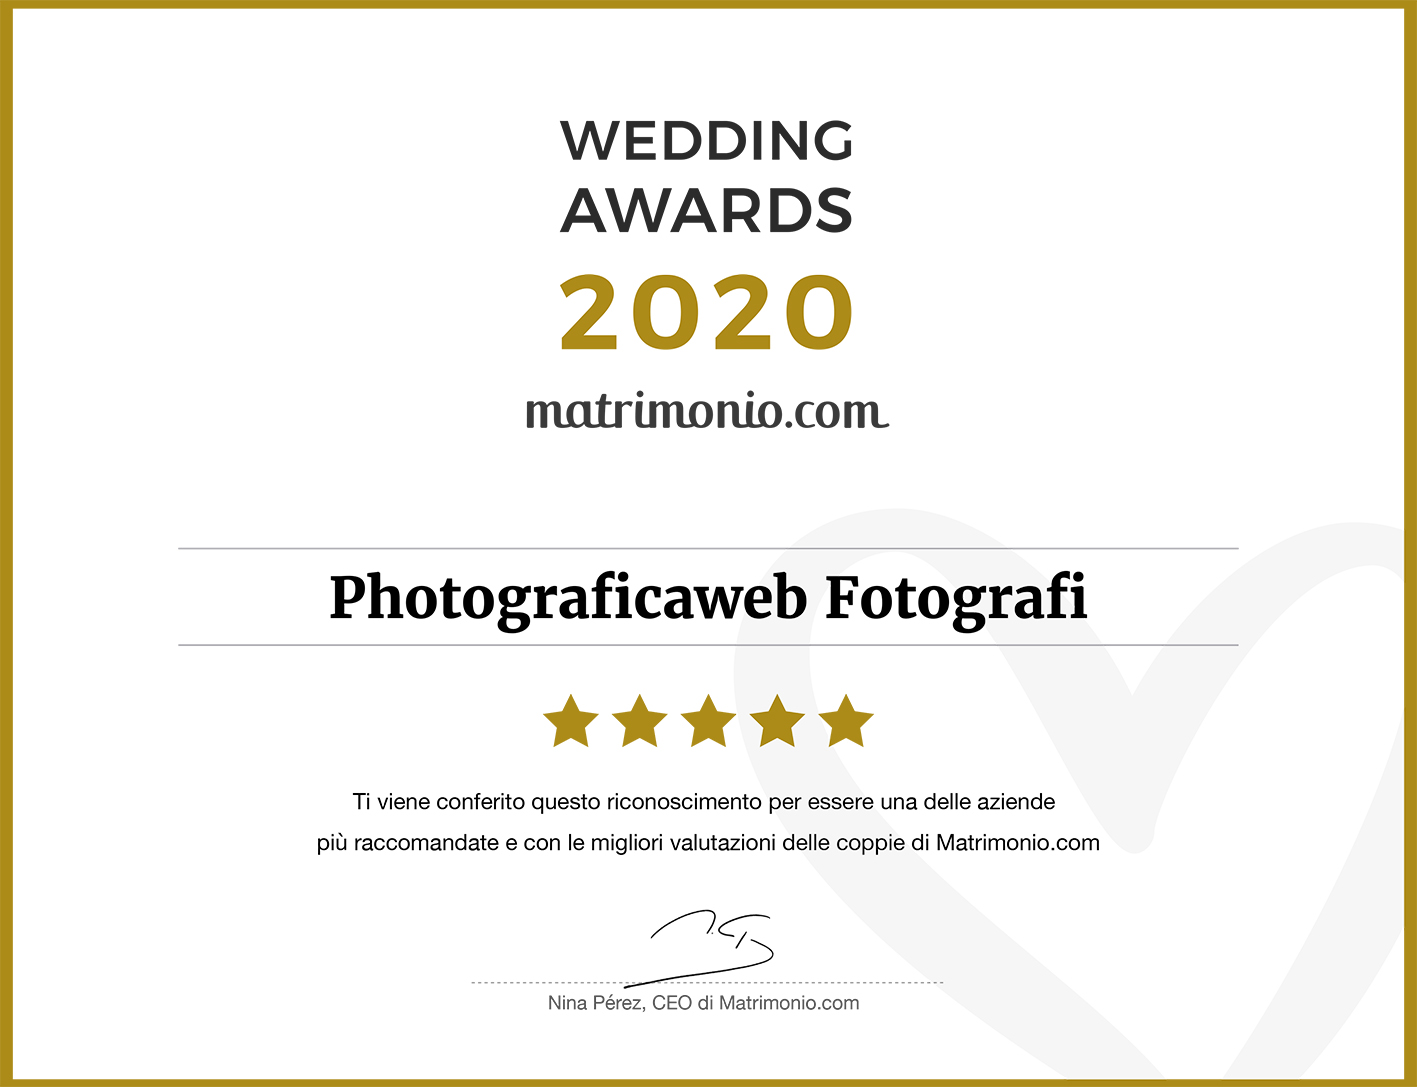 Wedding Awards 2020 photograficaweb